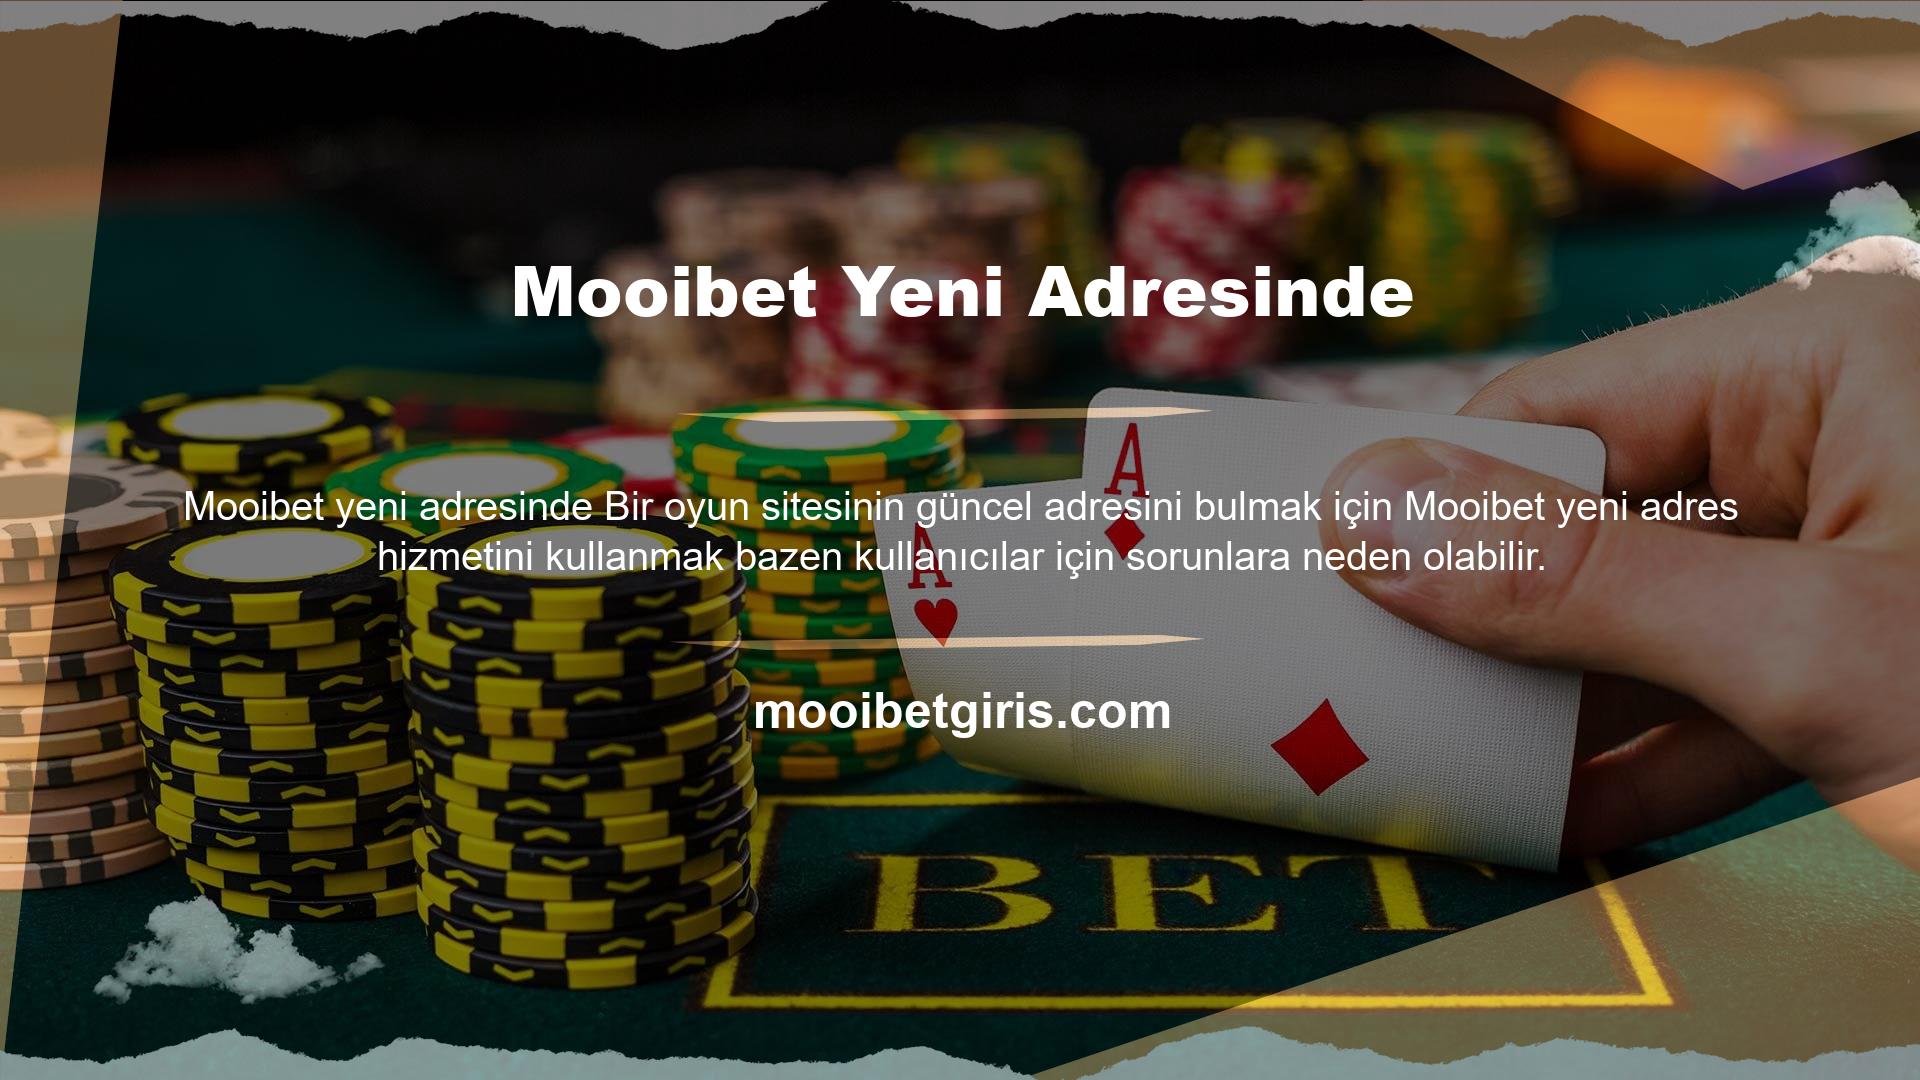 Siz de Mooibet gibi güvenilir bir bahis sitesi seçerek iyi vakit geçirme şansınızı değerlendirebilirsiniz